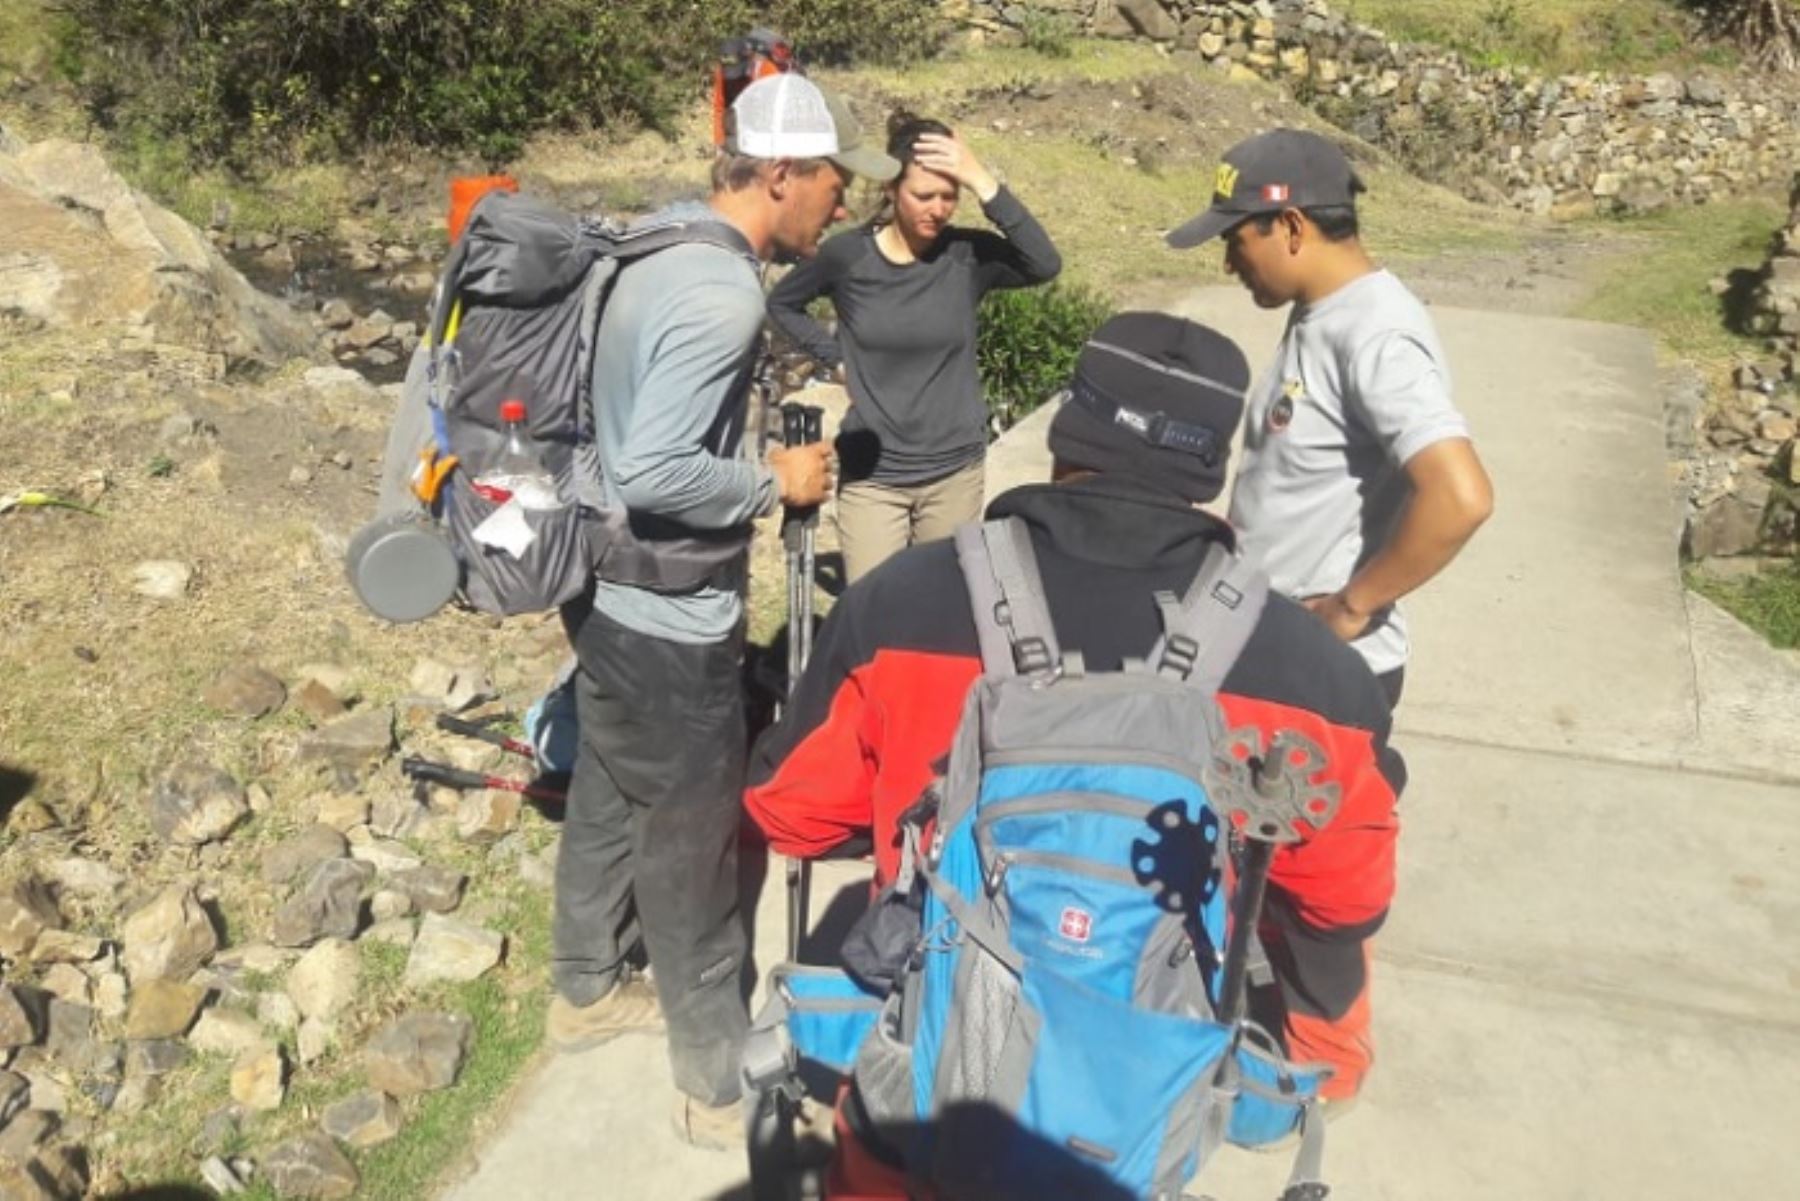 La Región Policial de Áncash confirmó hoy el rescate de dos turistas de Estados Unidos en la Cordillera de Huayhuash, en el distrito de Chiquián, provincia de Bolognesi, casi al límite con la provincia de Cajatambo (Lima).